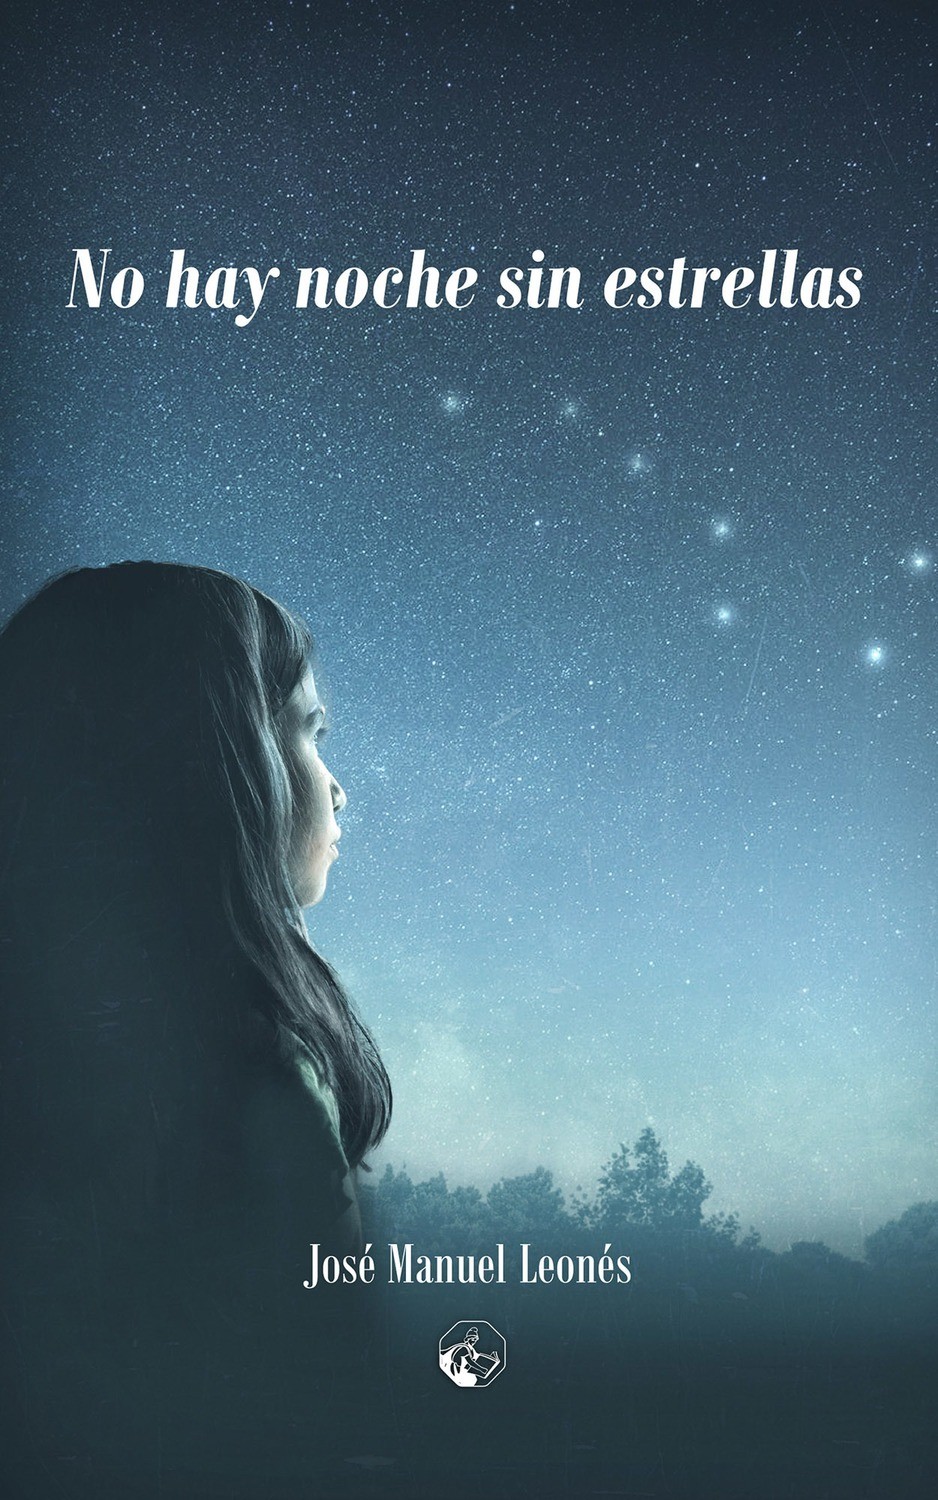 No hay noche sin estrellas